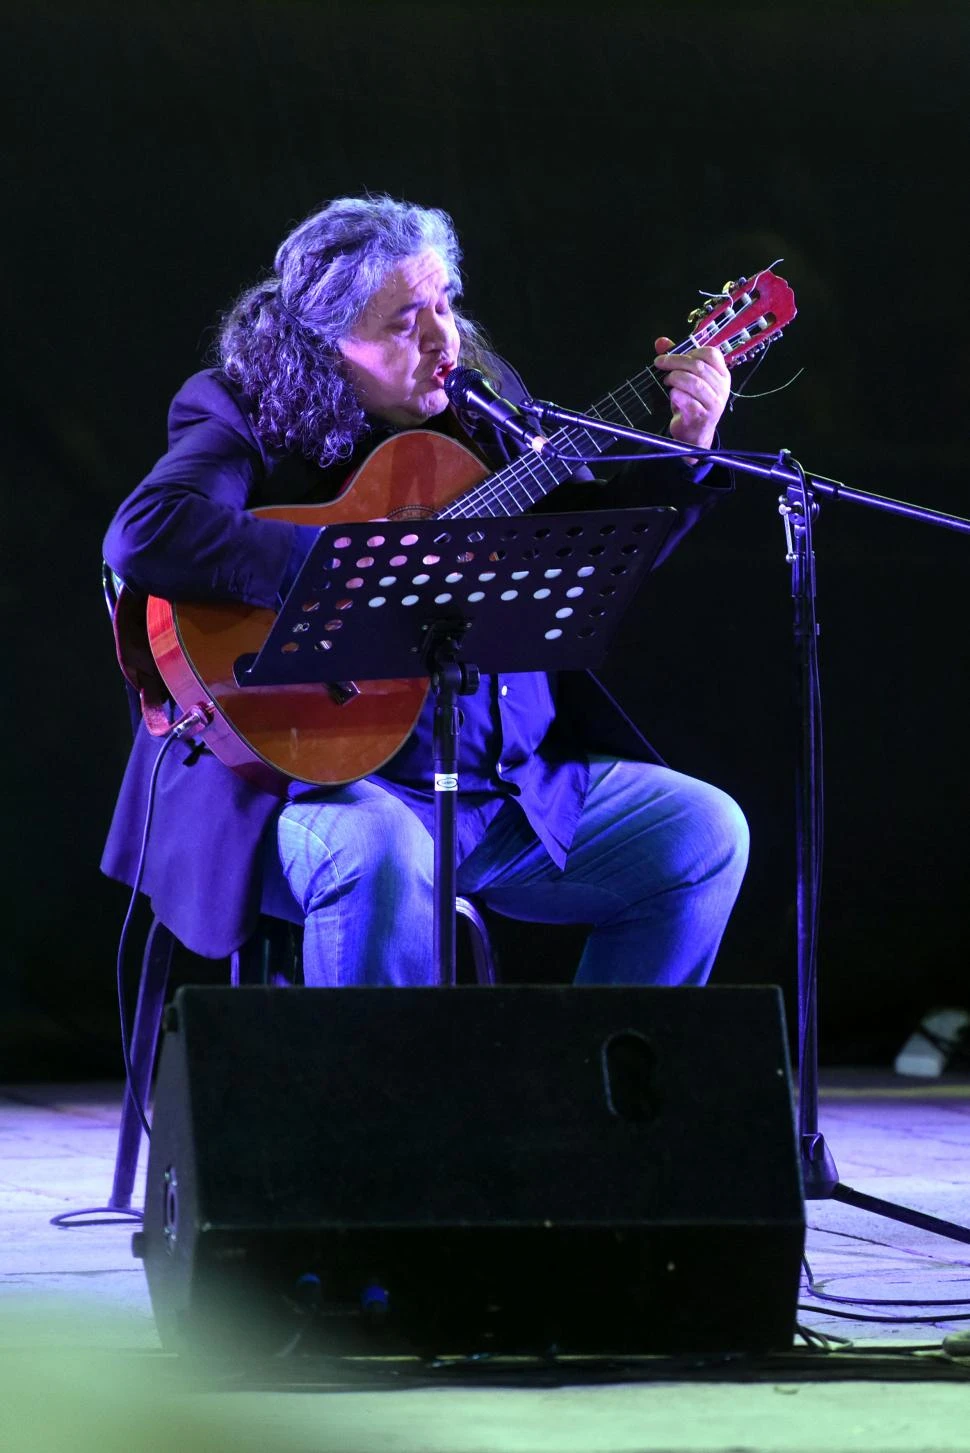 COMPOSITOR Y CREADOR. En el recital de esta noche Lucho Hoyos rescatará la sonoridad y el concepto de la guitarra, adelantó a LA GACETA.